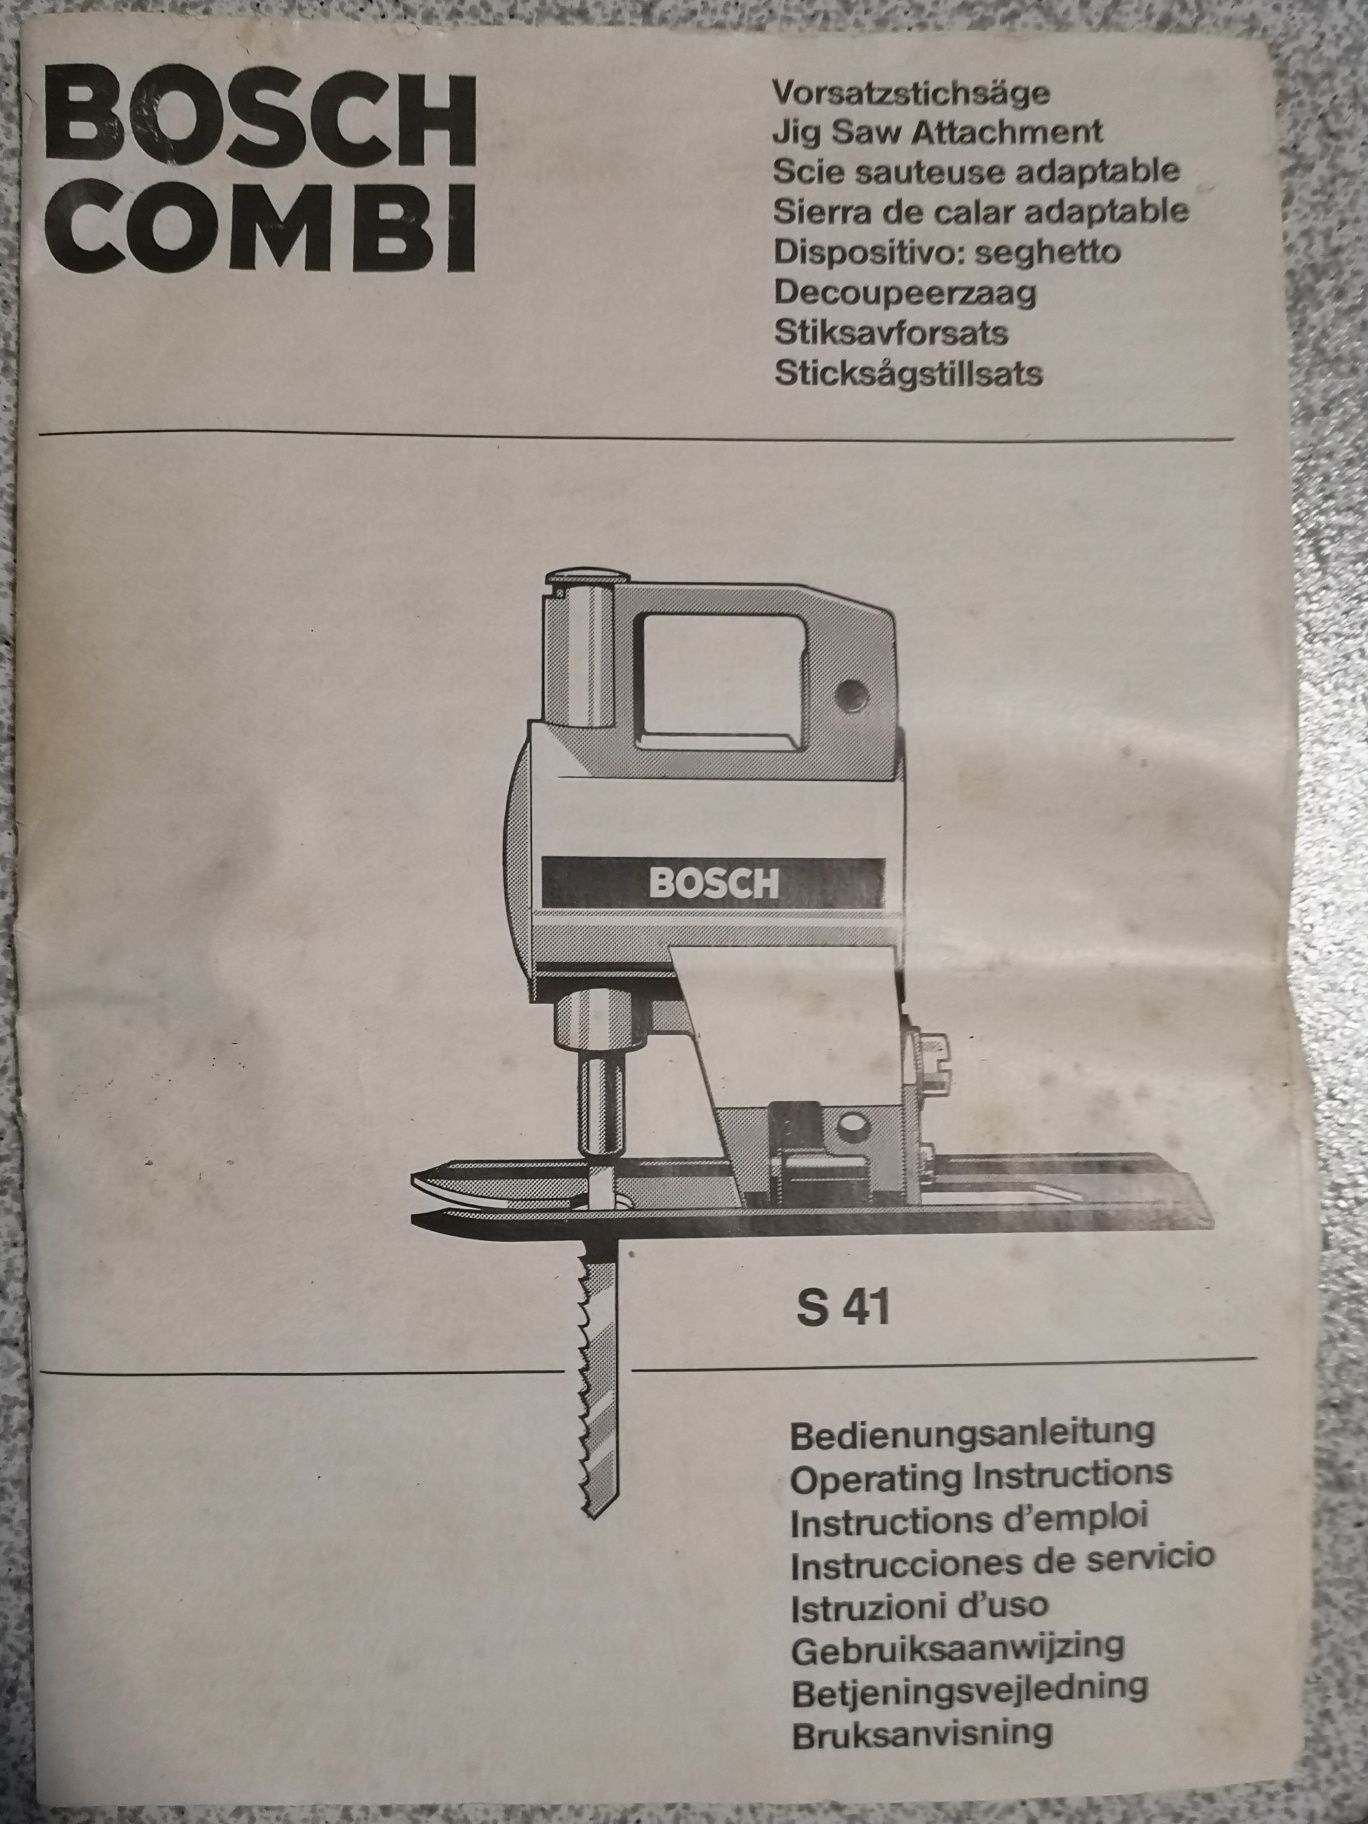 Bosch Combi s41 usado